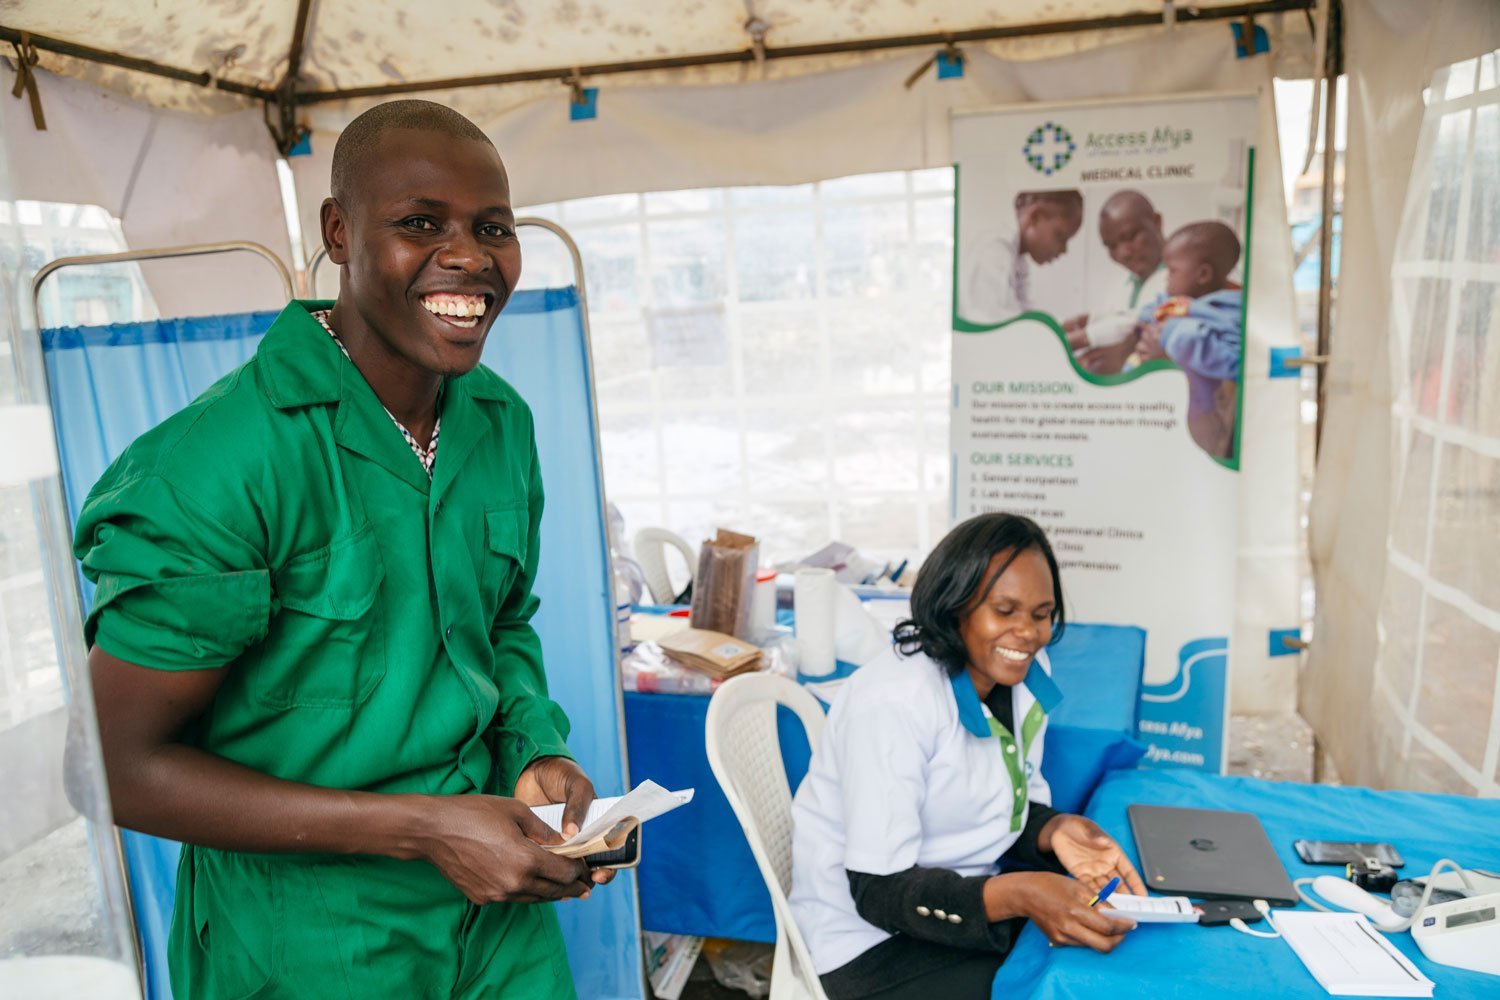 Held*innen helfen Held*innen: Gesundheits-Check in Nairobi | Mr. Green